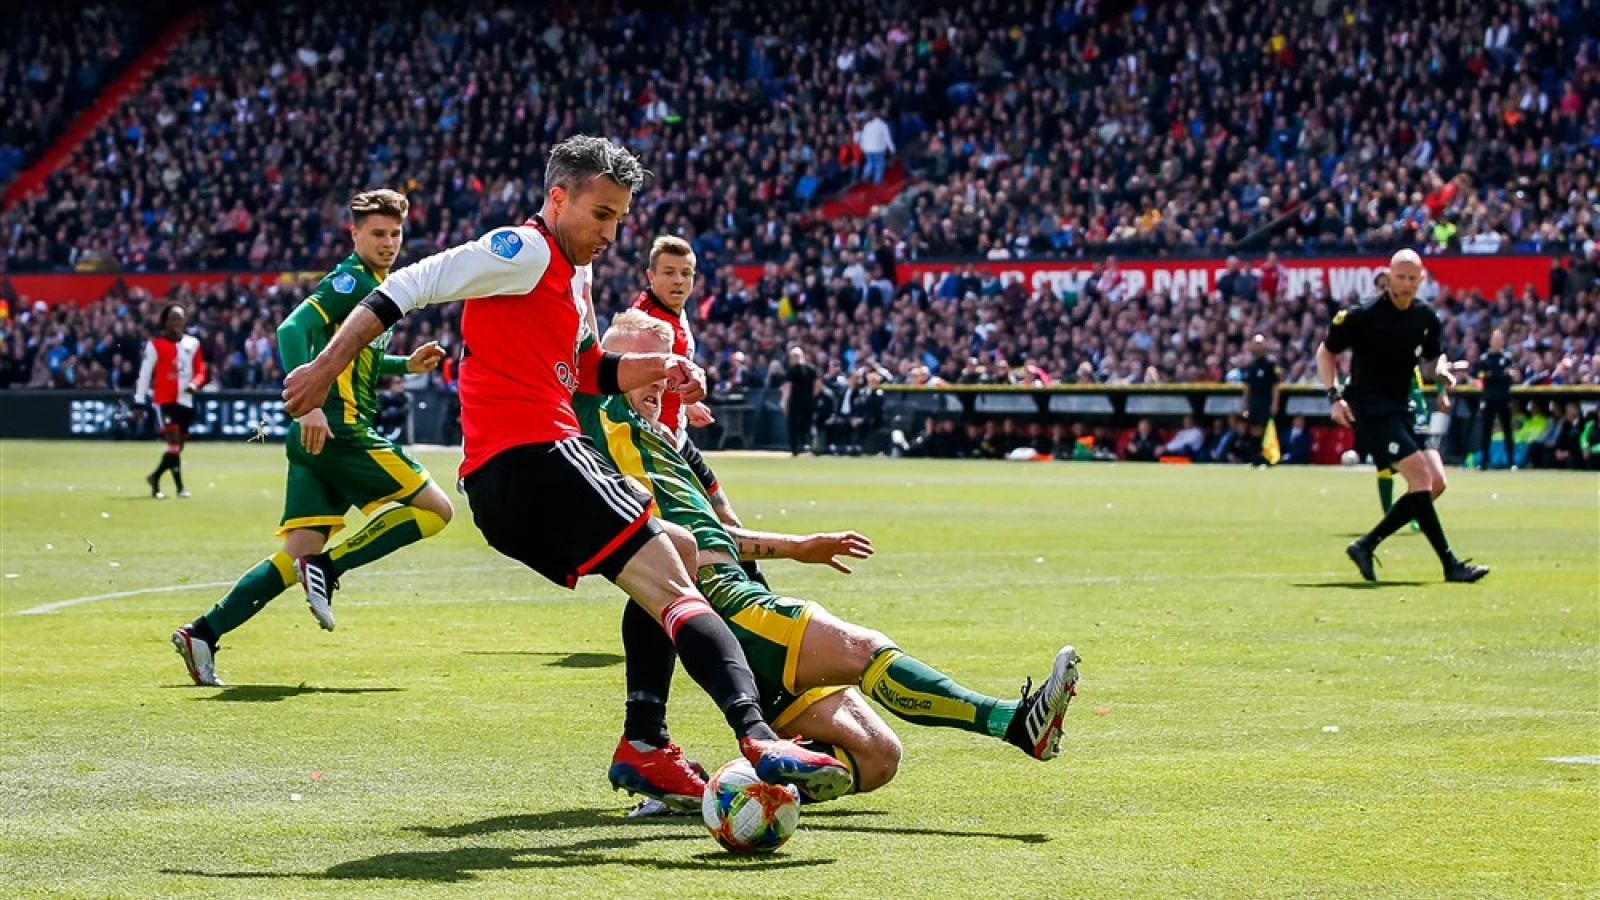 LIVE | Feyenoord - ADO Den Haag 0-2 | Einde wedstrijd